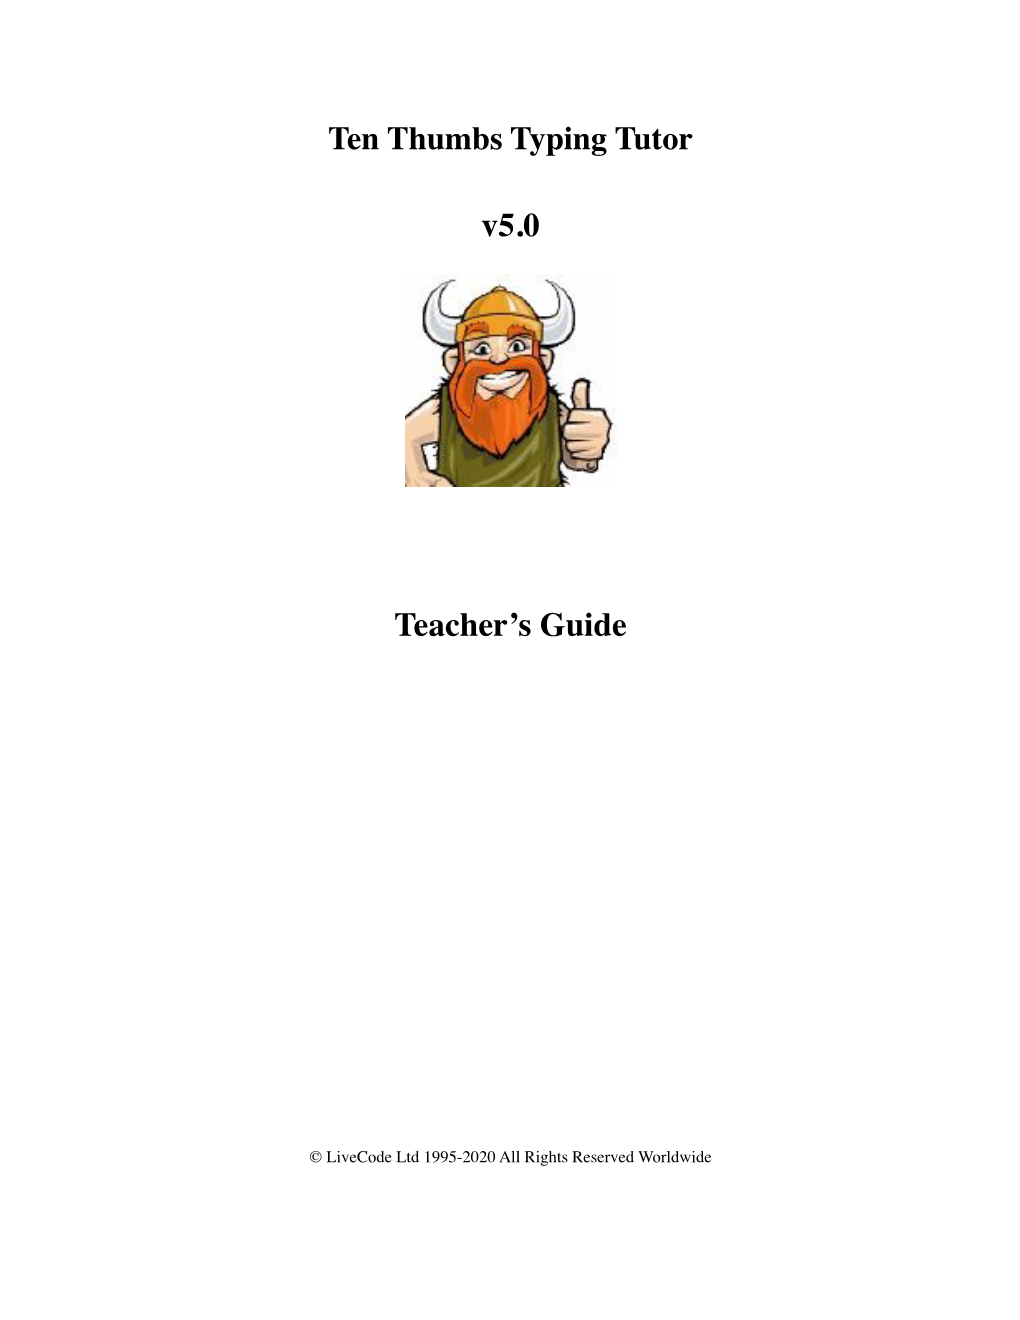 V5.0 Teacher's Guide